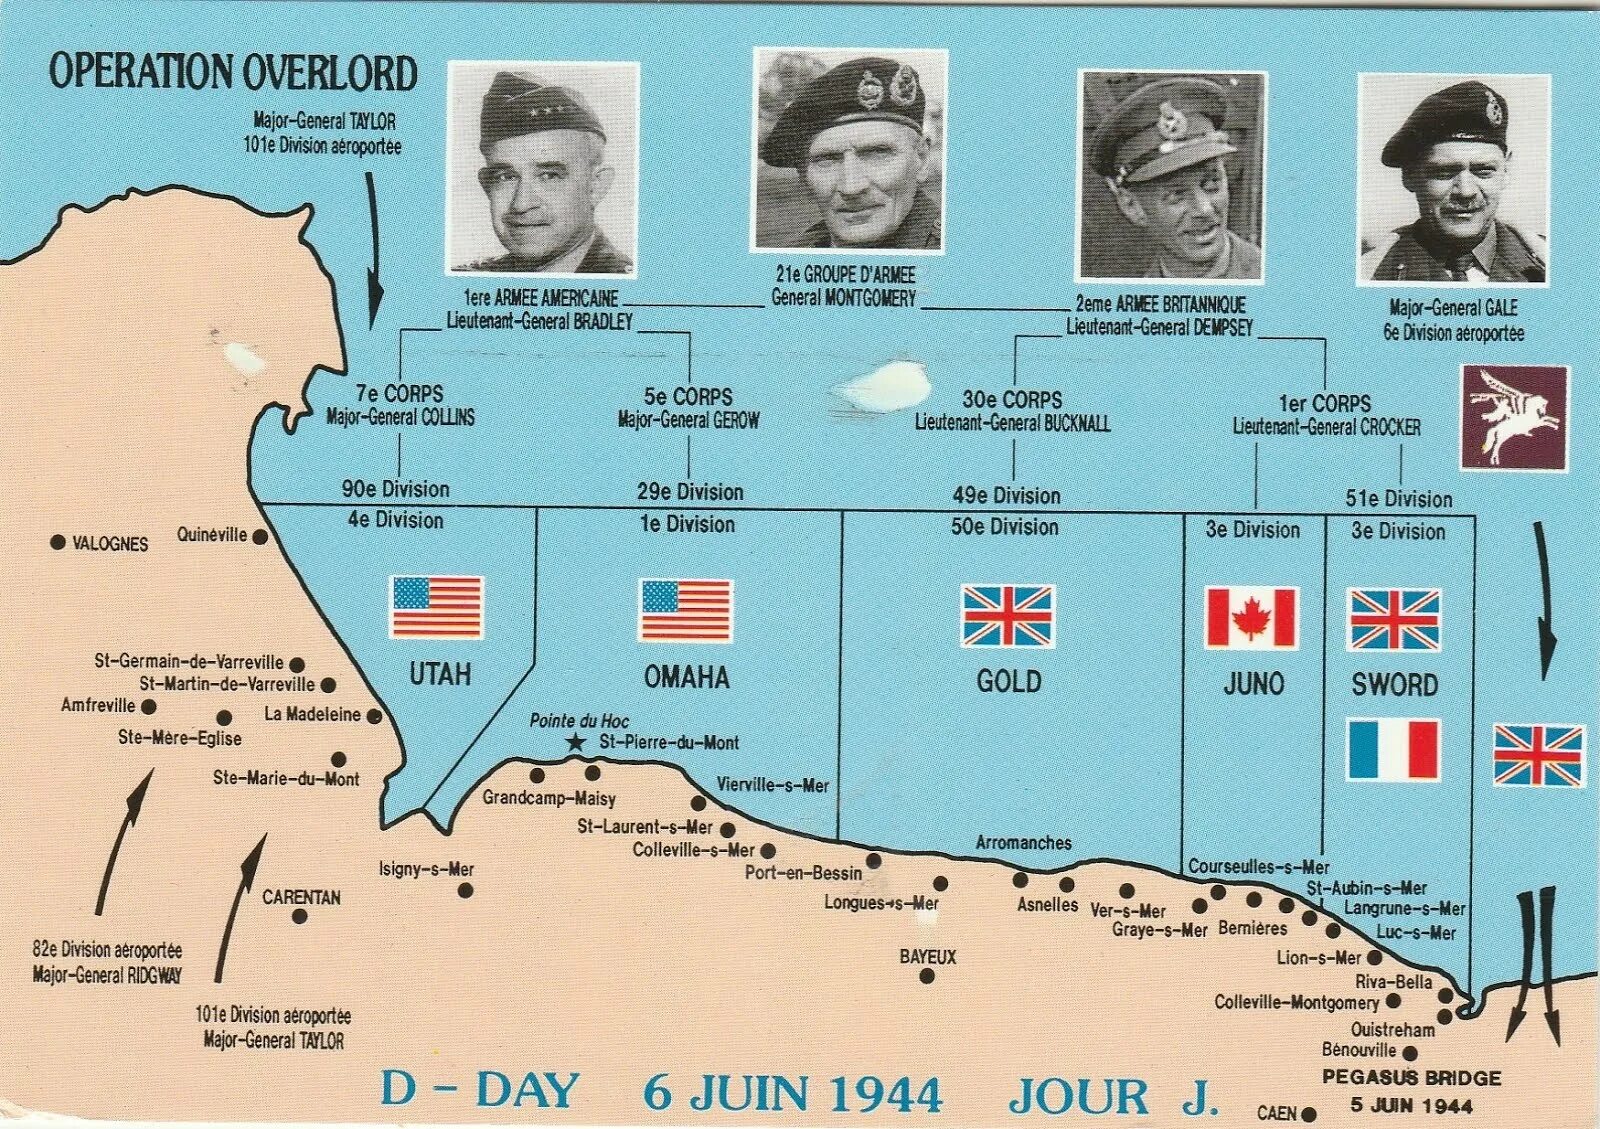 1944 сколько лет человеку. Операция в Нормандии 1944 карта. Высадка в Нормандии 1944 план. Операция Оверлорд карта. Нормандская операция Оверлорд карта.